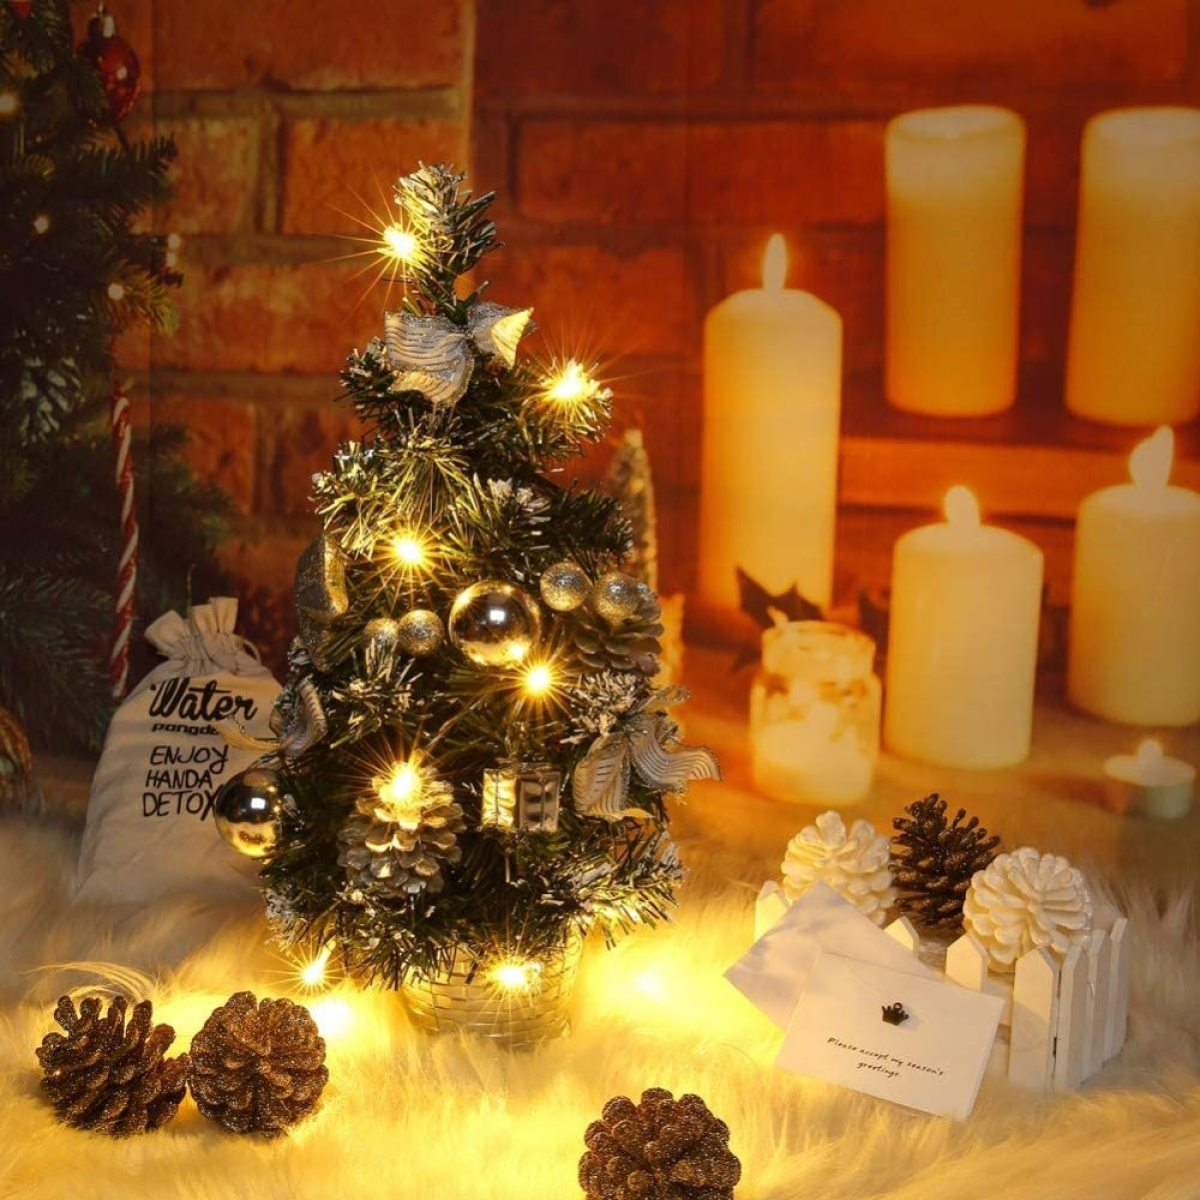 COZEVDNT Mini Weihnachtsbaum mit Weihnachtsdeko, Beleuchtung Silber und Baumschmuck